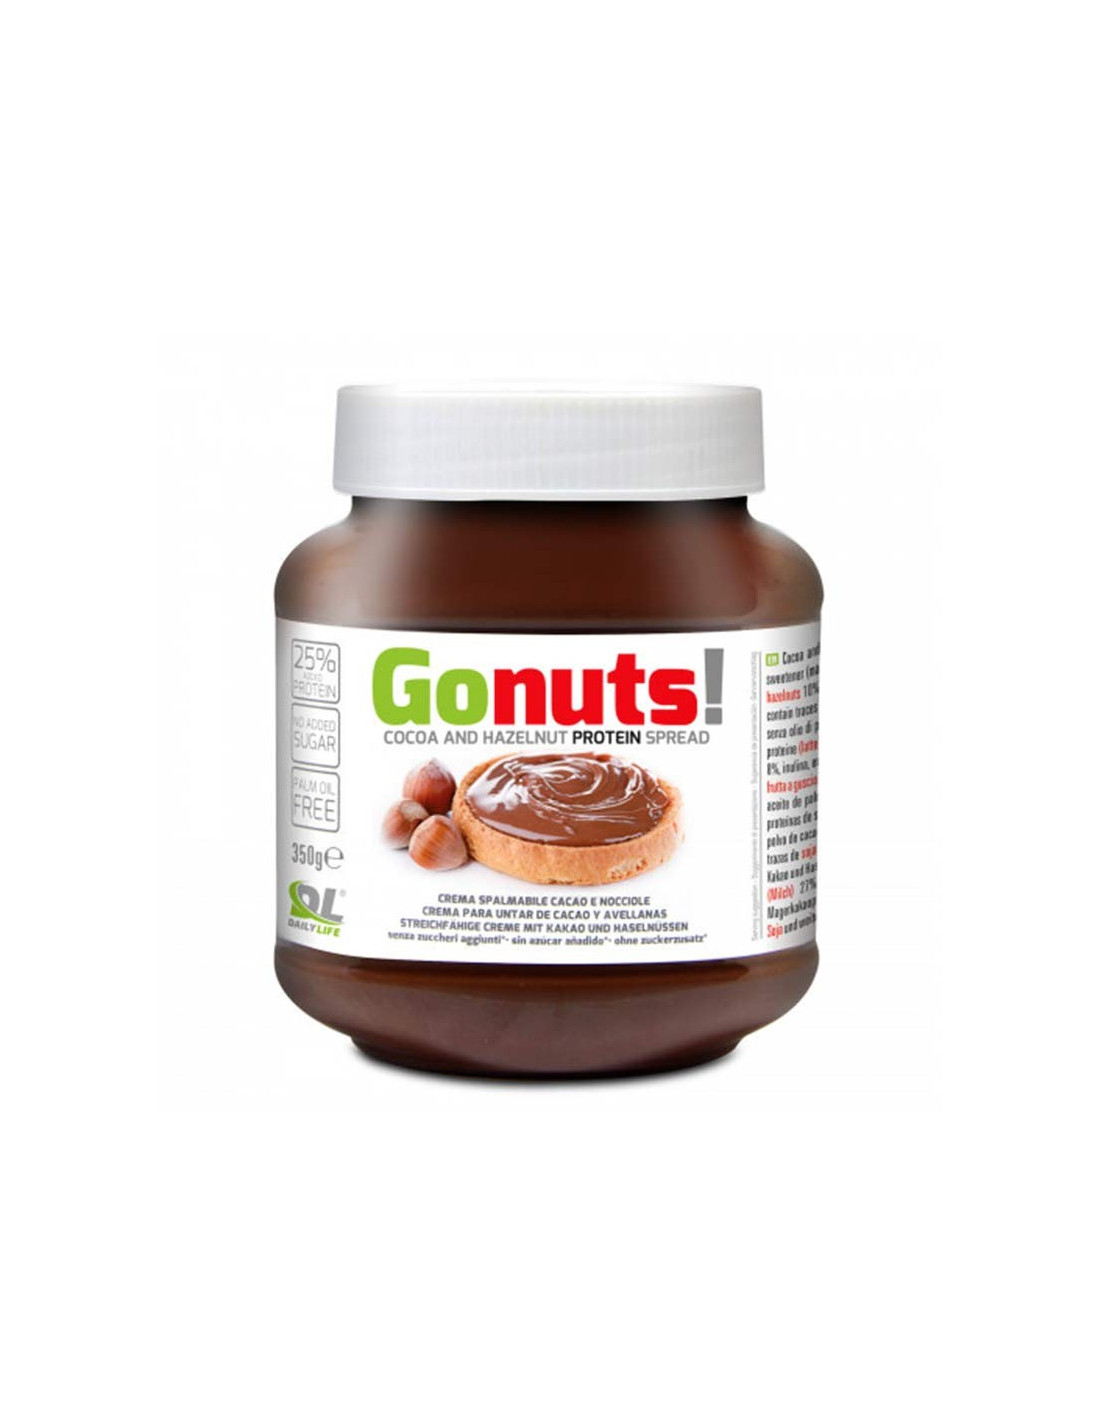 Pâte à tartiner Gonuts 350g - Daily Life